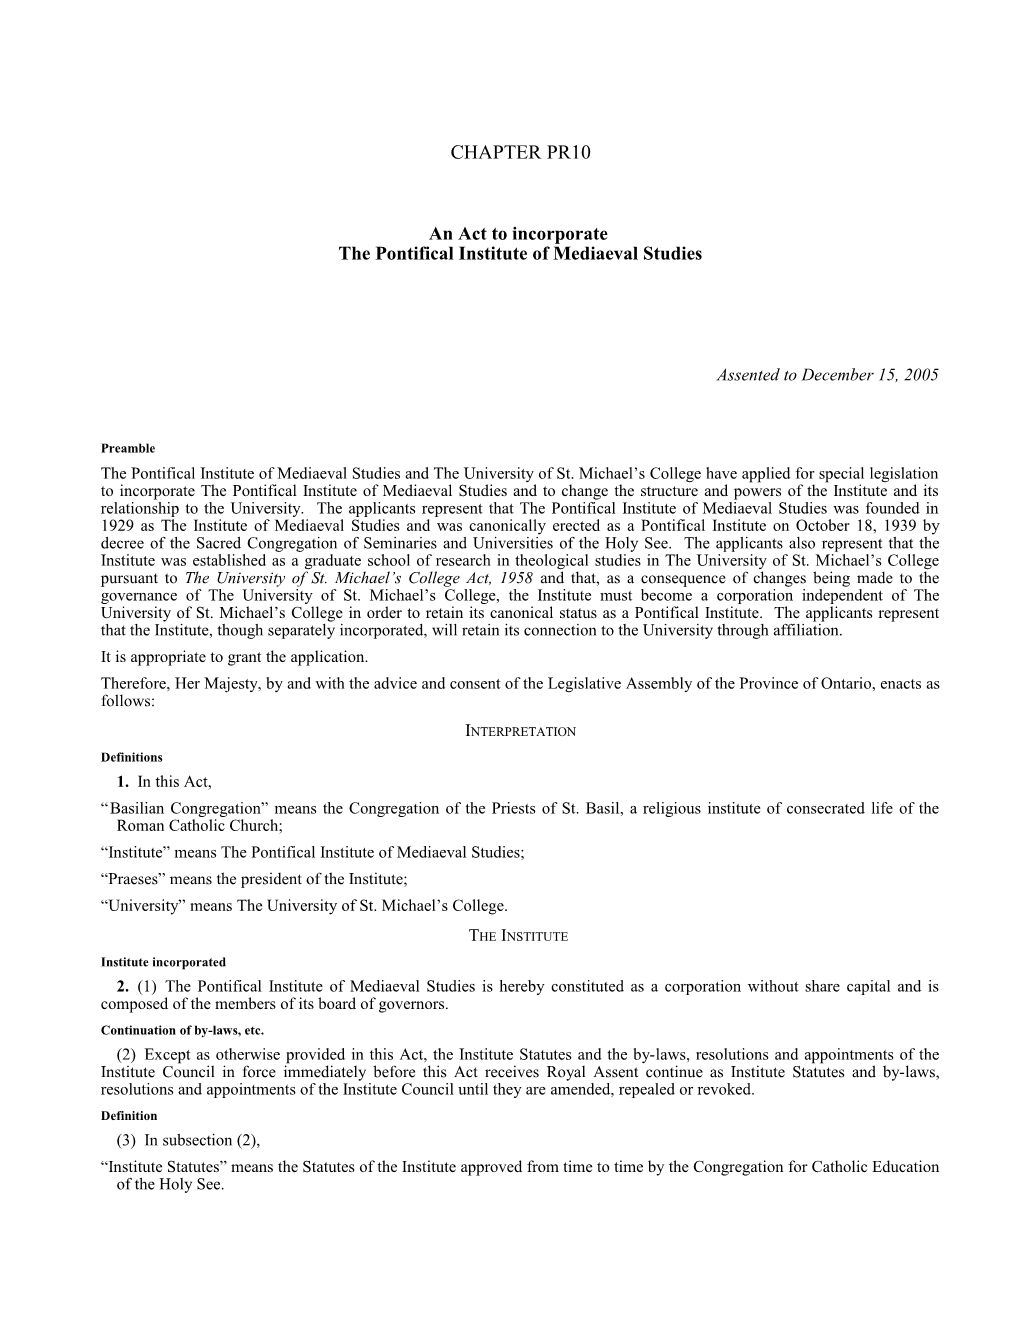 Pontifical Institute of Mediaeval Studies Act, 2005, S.O. 2005, C. Pr10 - Bill Pr21